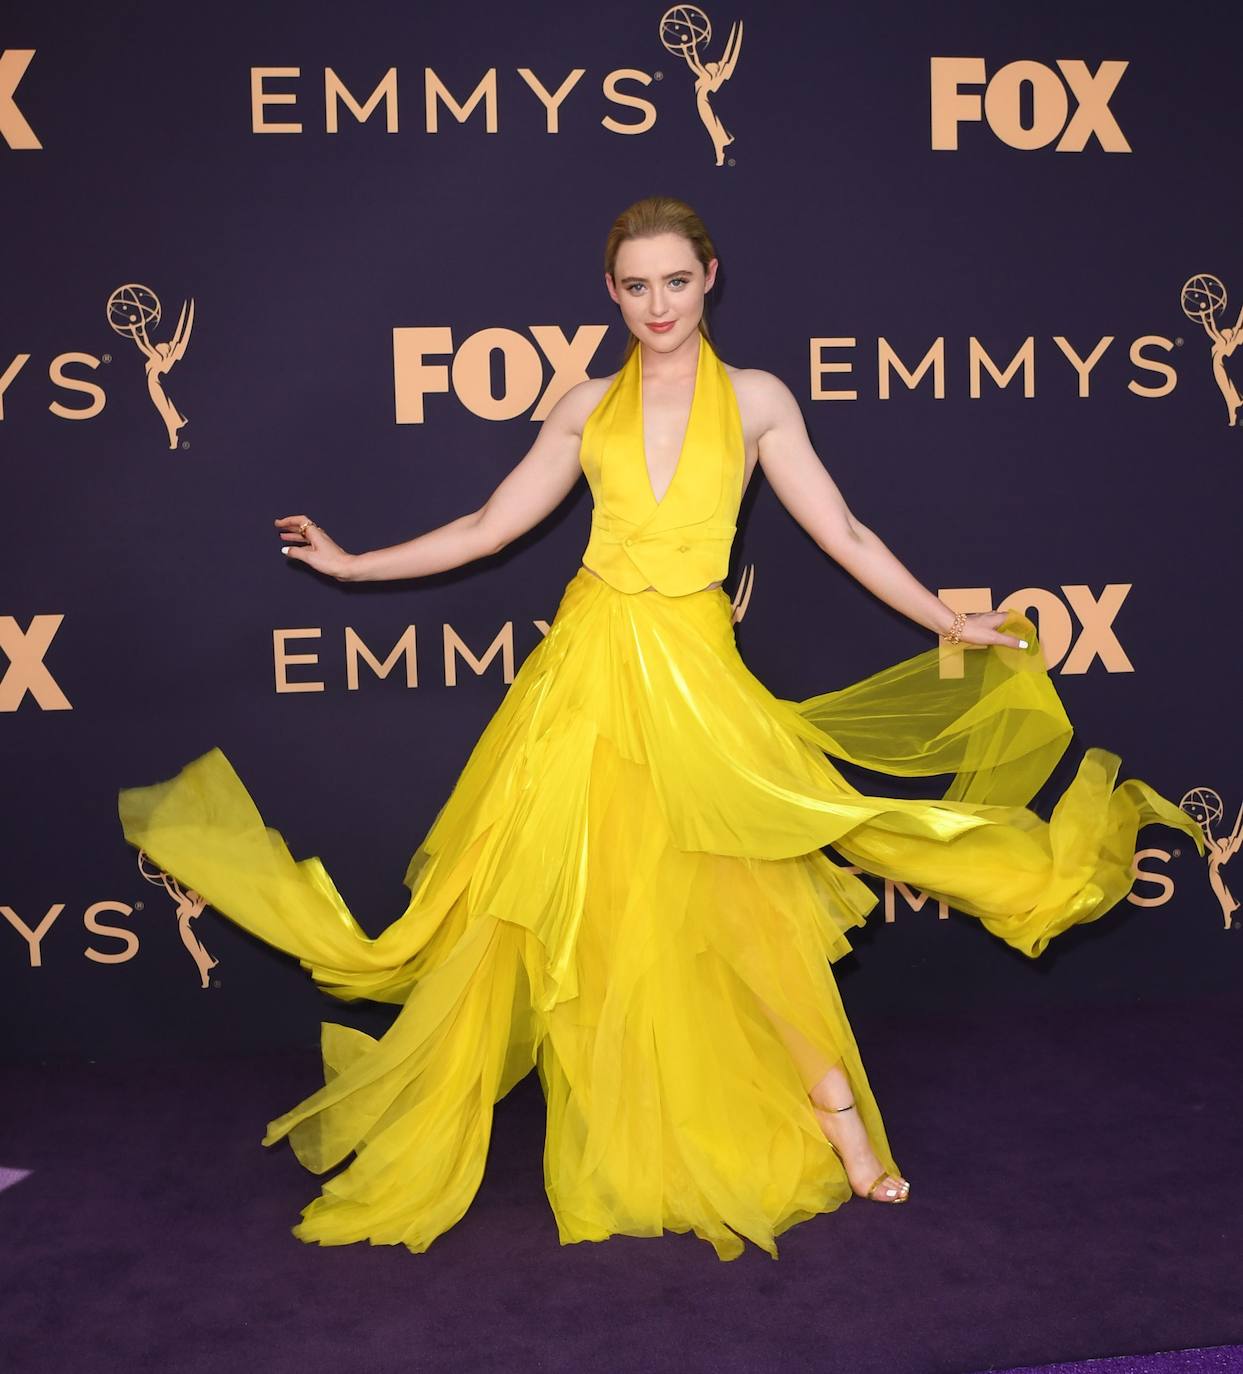 Fotos: Fotos. Las estrellas de la televisión desfilan en los Emmy